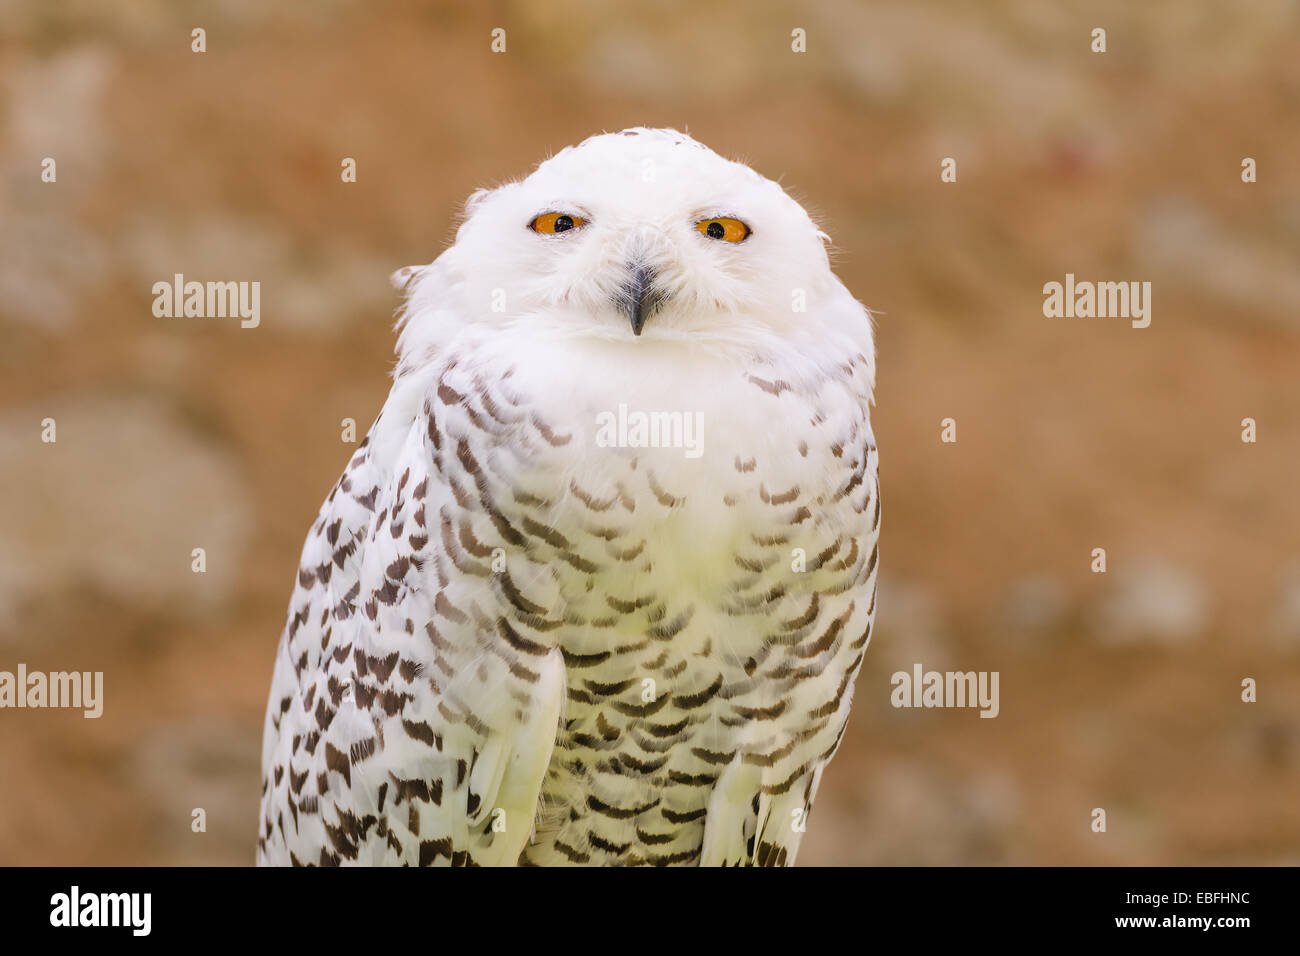 Porträt von ruhigen Raubtier Wildvogel verschneiten weiße Eule Kameraobjektiv mit gelben Augen anstarren Stockfoto